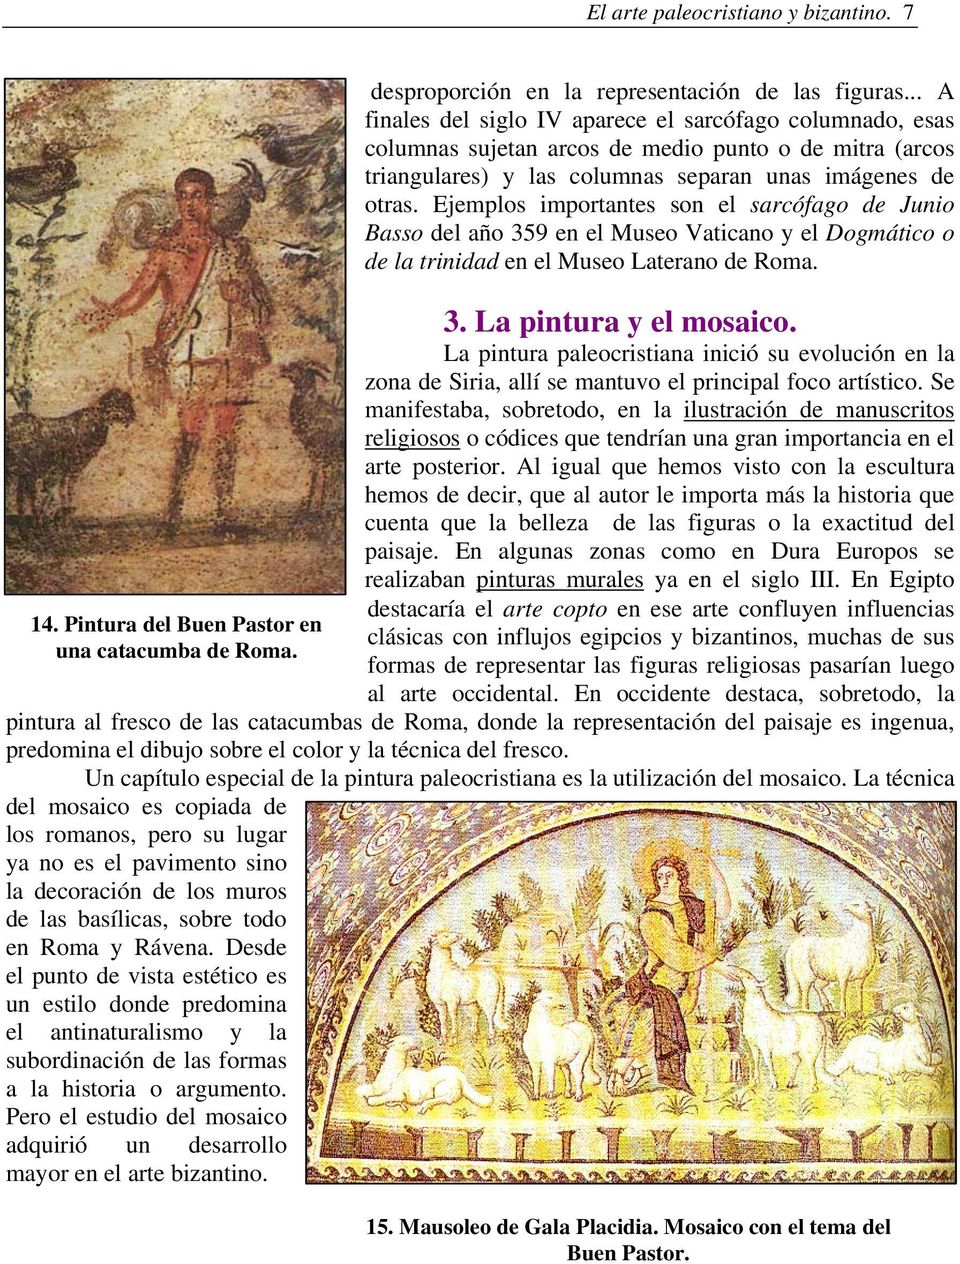 Ejemplos importantes son el sarcófago de Junio Basso del año 359 en el Museo Vaticano y el Dogmático o de la trinidad en el Museo Laterano de Roma. 3. La pintura y el mosaico.